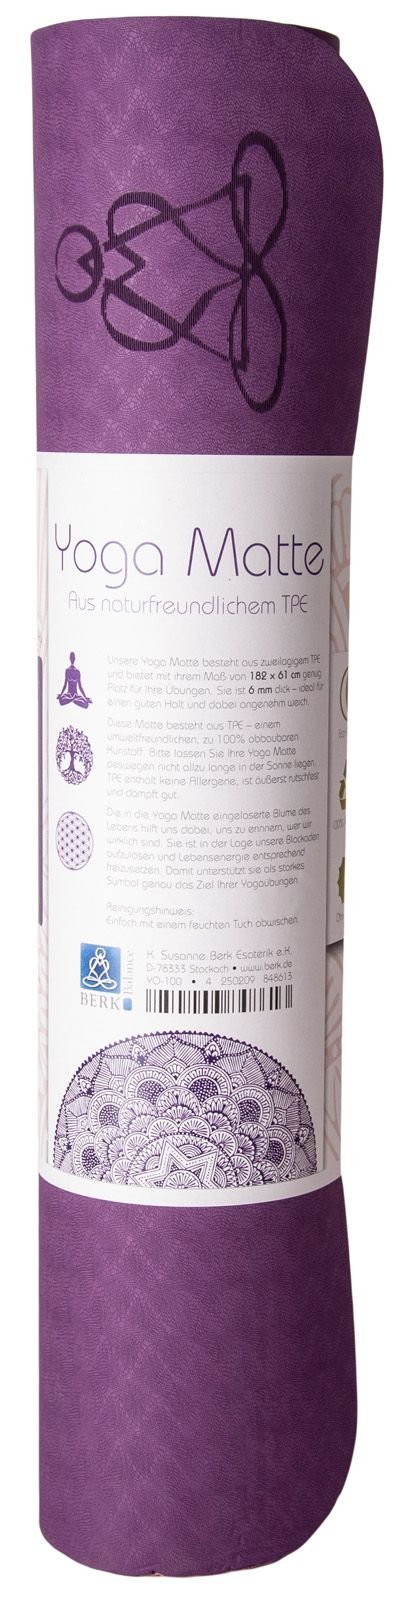 Yogamatte TPE ecofriendly - dunkellila/zartlila 6mm zweischichtig mit Blume des Lebens - Das Raeucherwerk